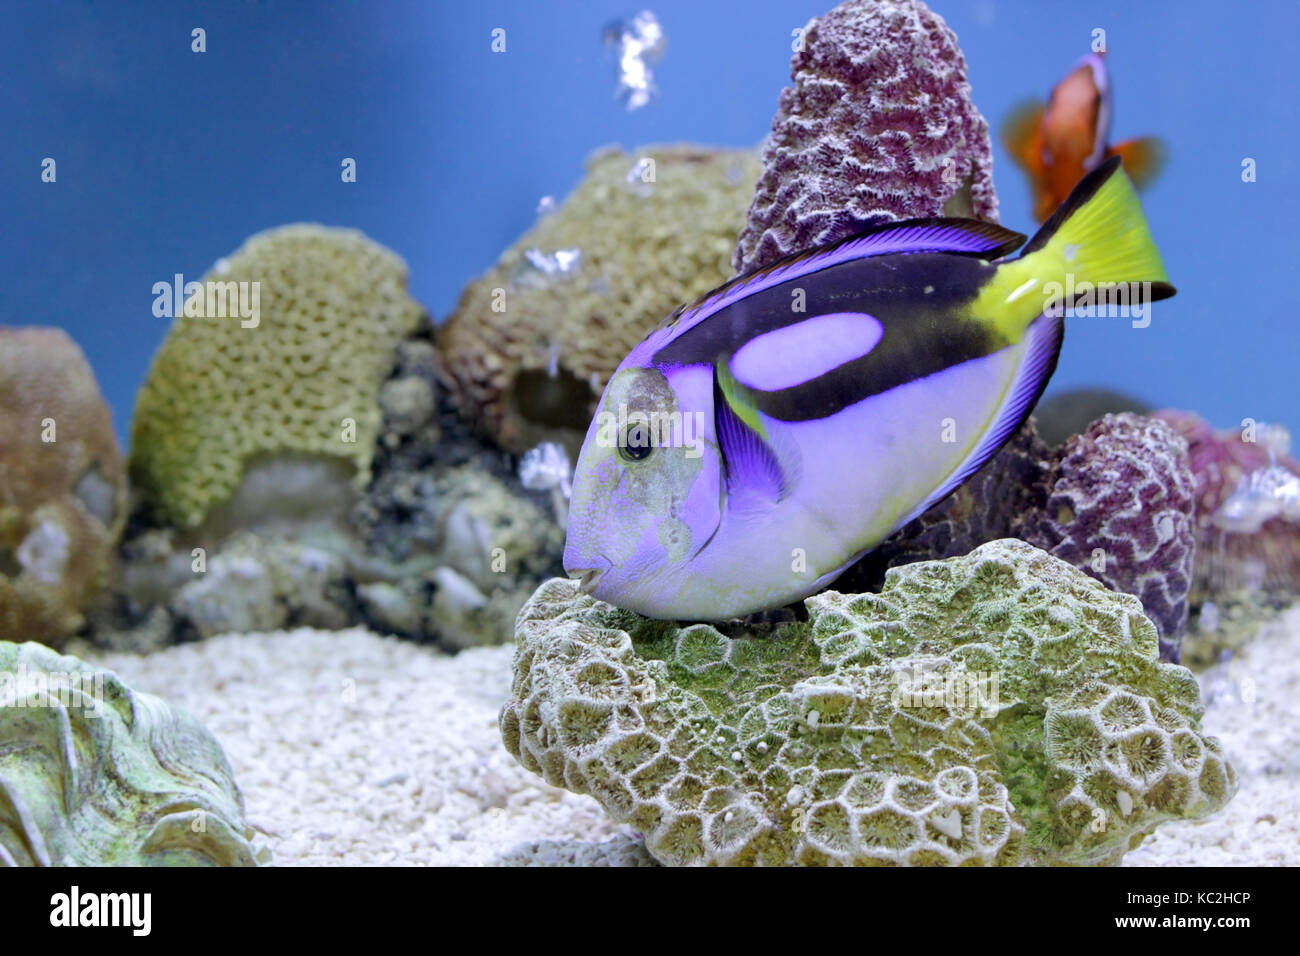 underwater picture, exotic surgeon fish in aquarium Stock Photo